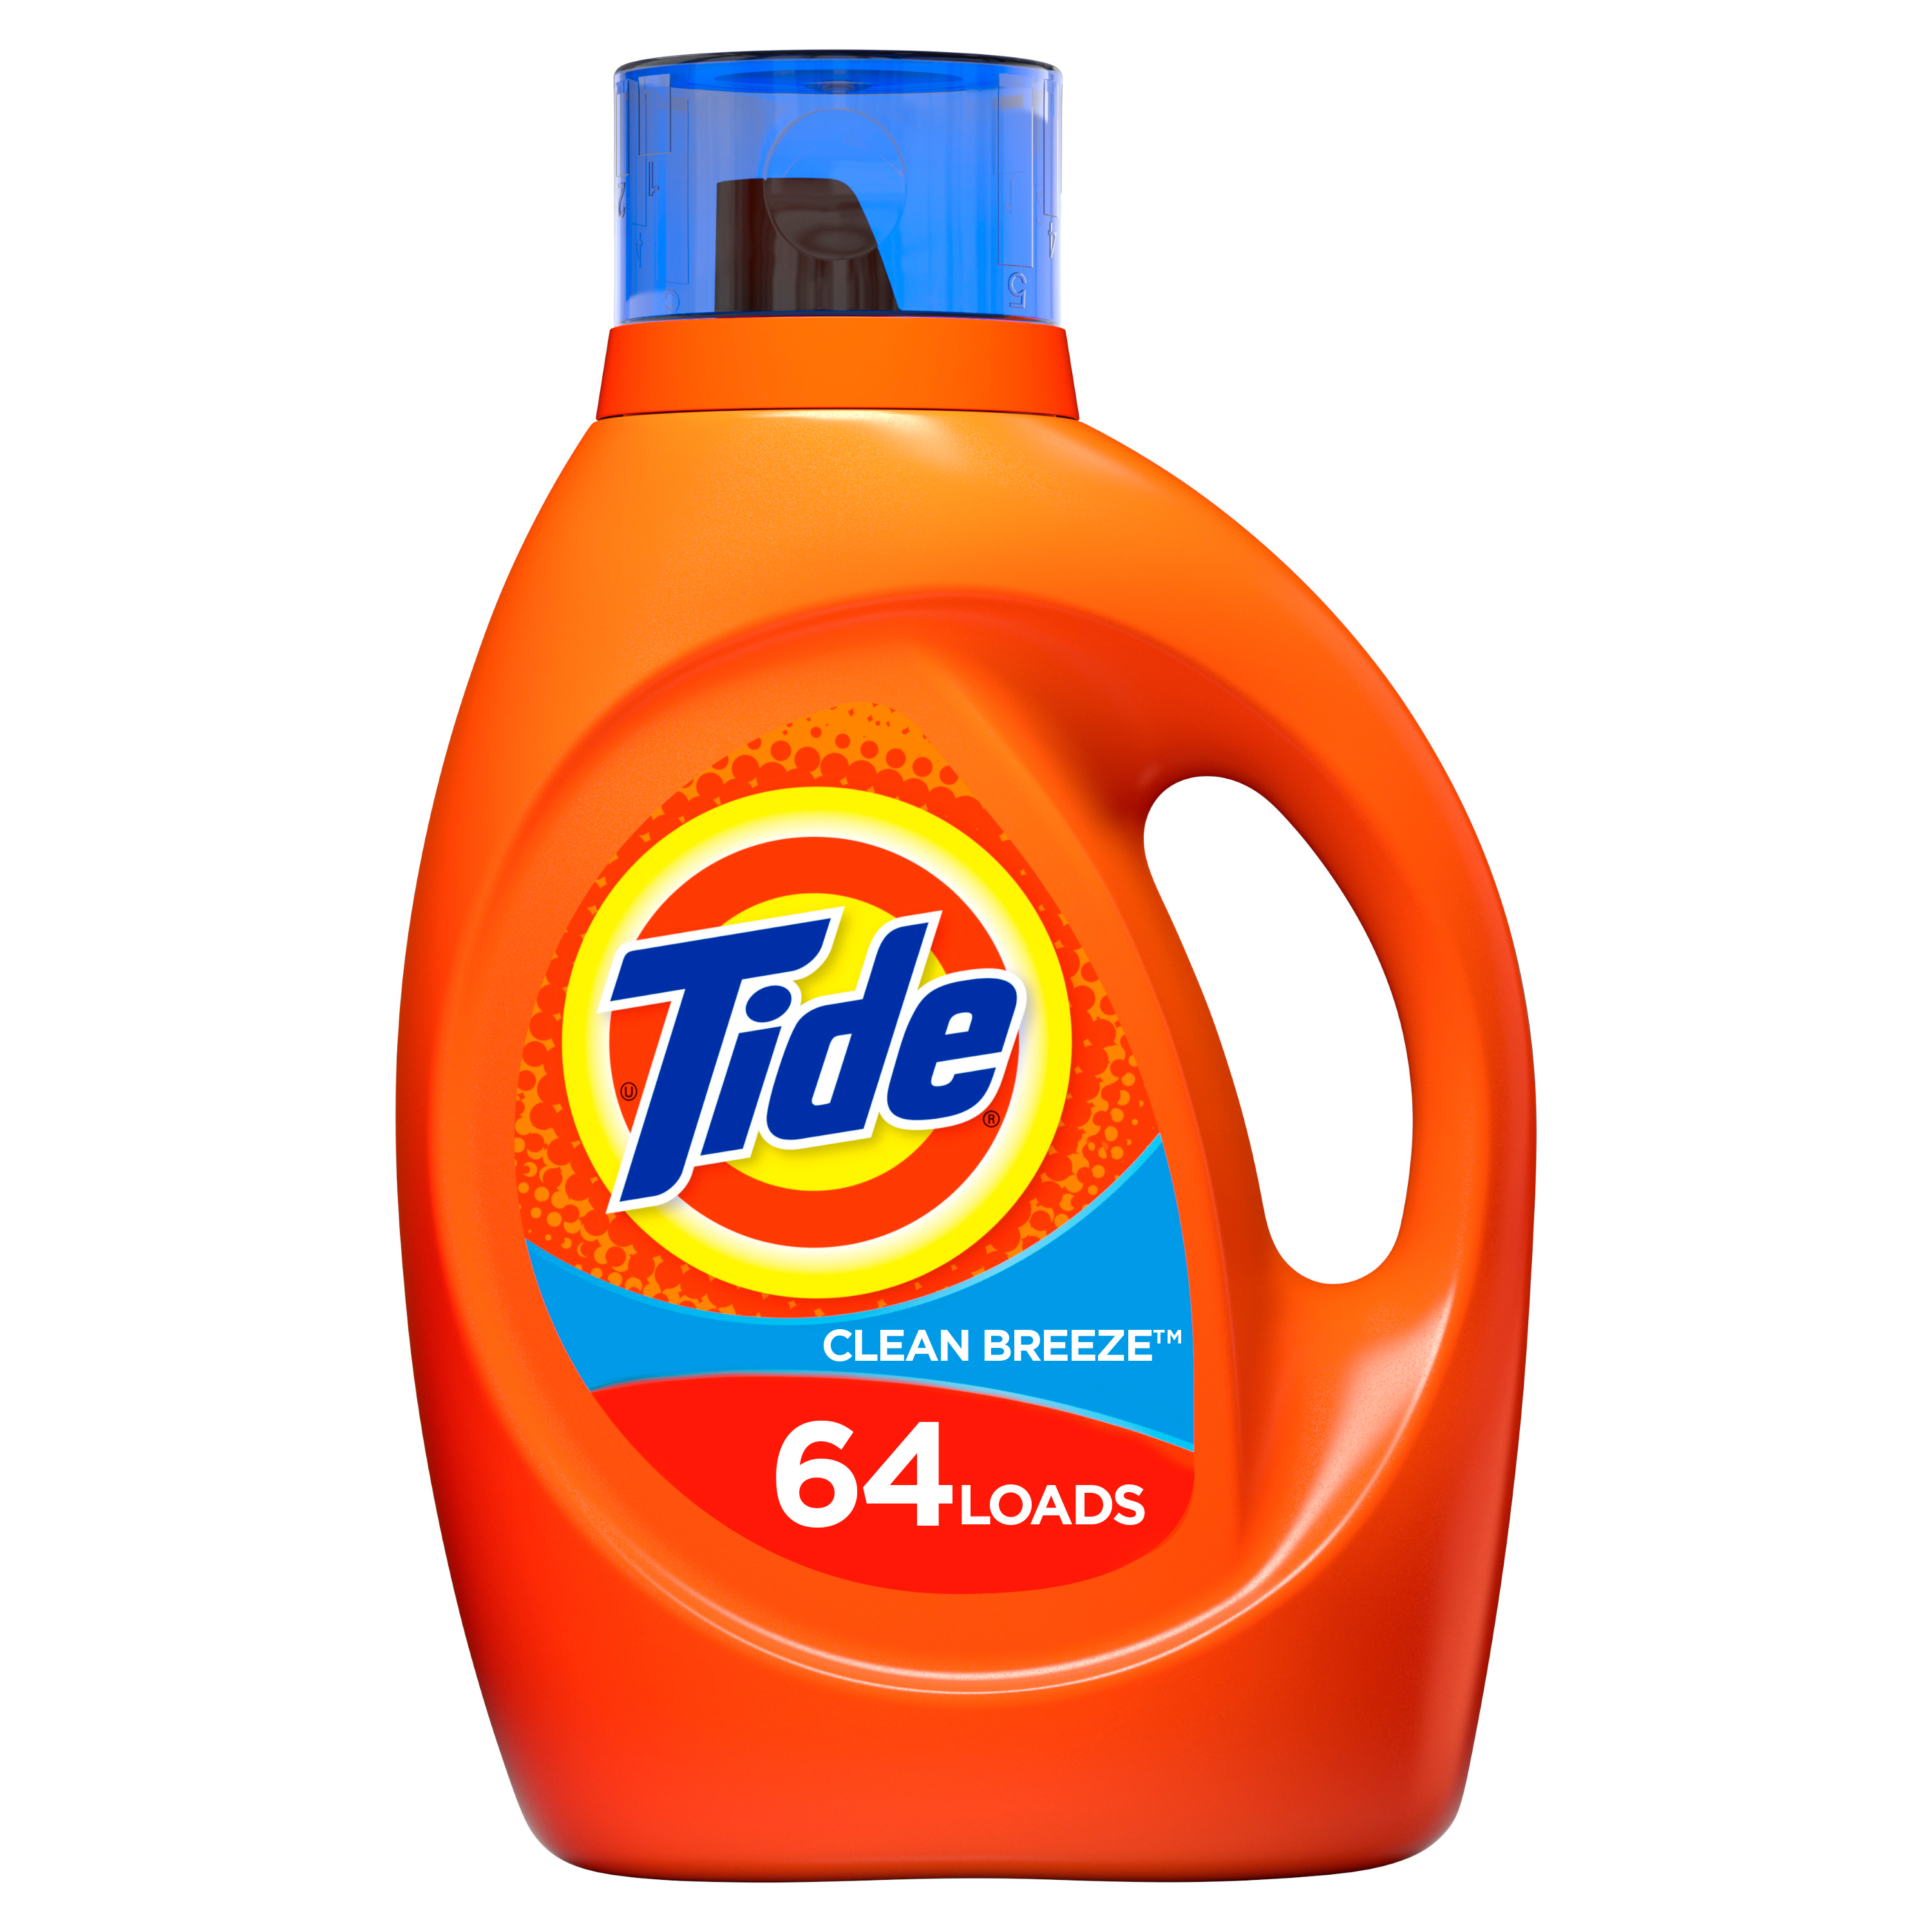 Tide Clean Breeze Scent Liquid Laundry Detergent, 64 loads, 2.95 L - image 1 of 9